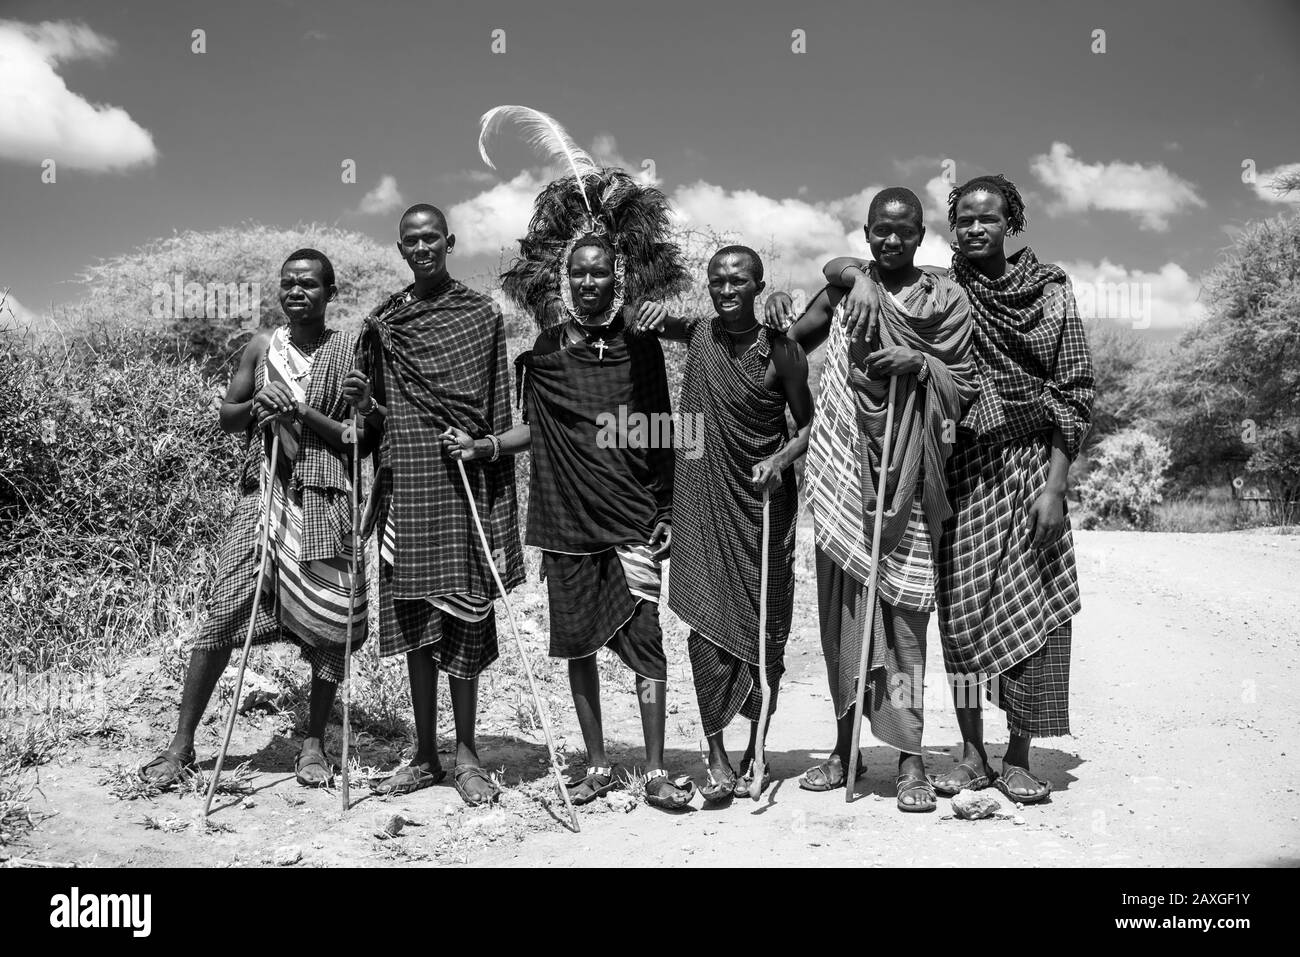 Groupe de beau Maasai local dans la robe traditionnelle. J'ai adoré le drame de la version noir et blanc. Banque D'Images